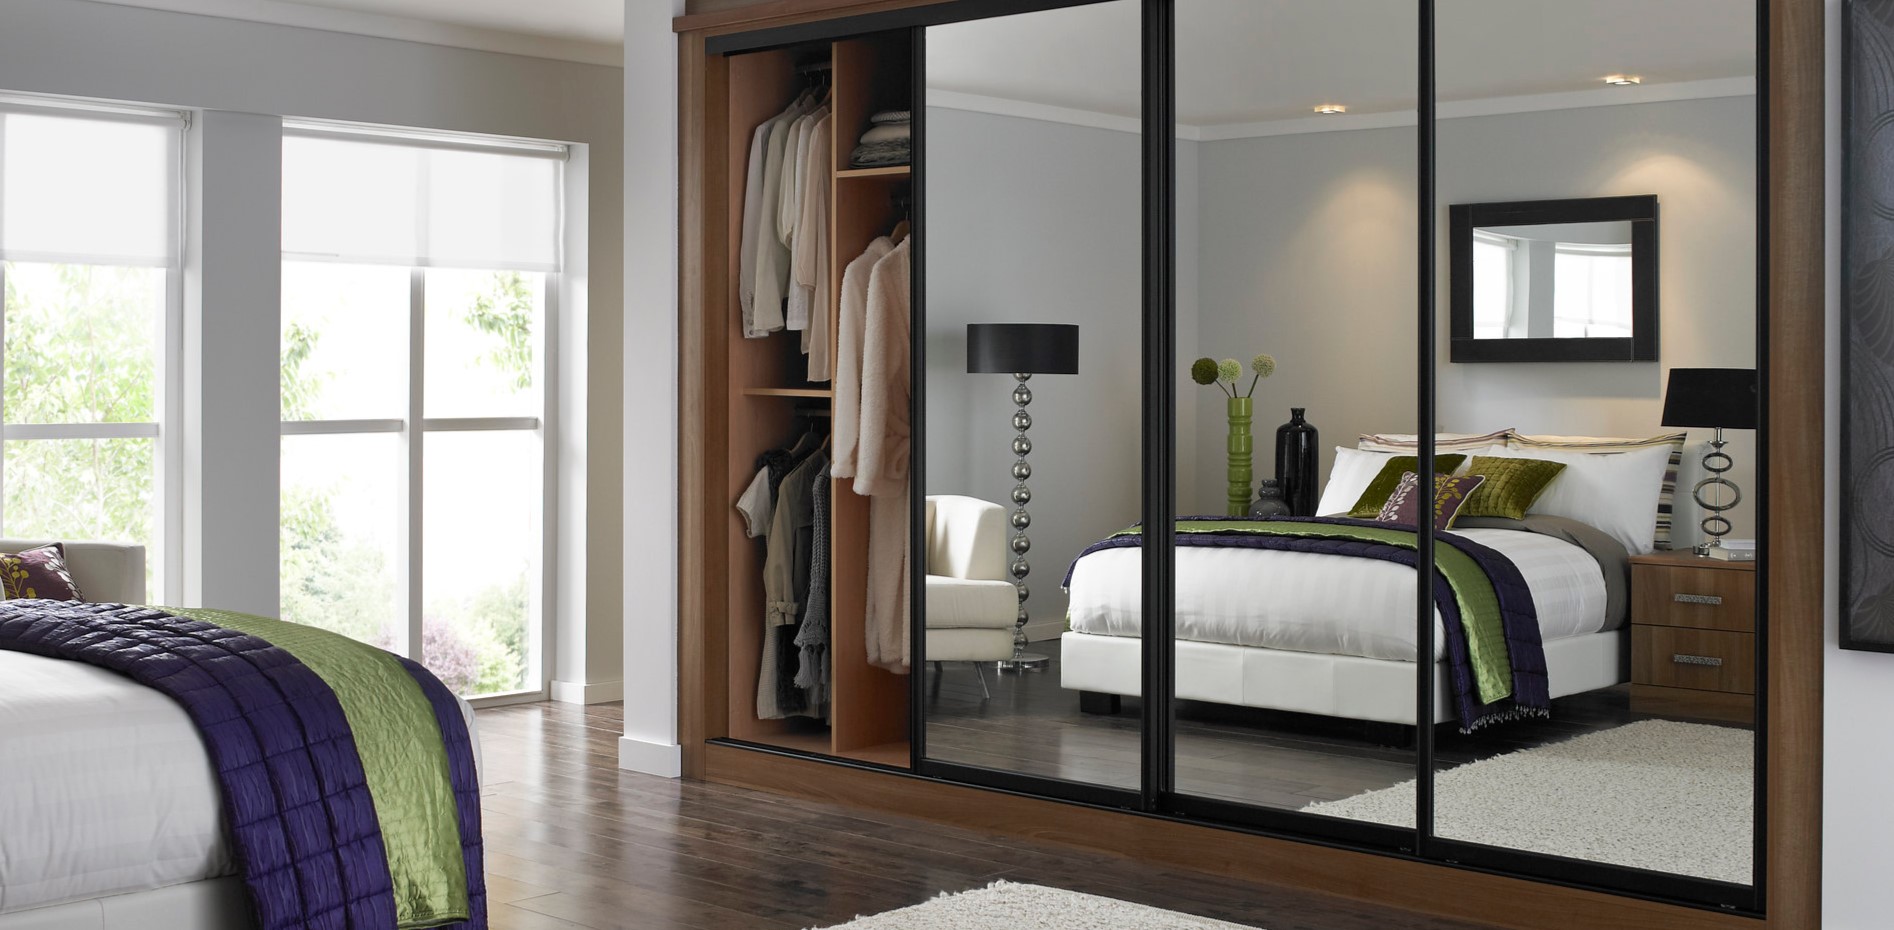 Шкаф с зеркальными дверцами позволит визуально увеличить комнату